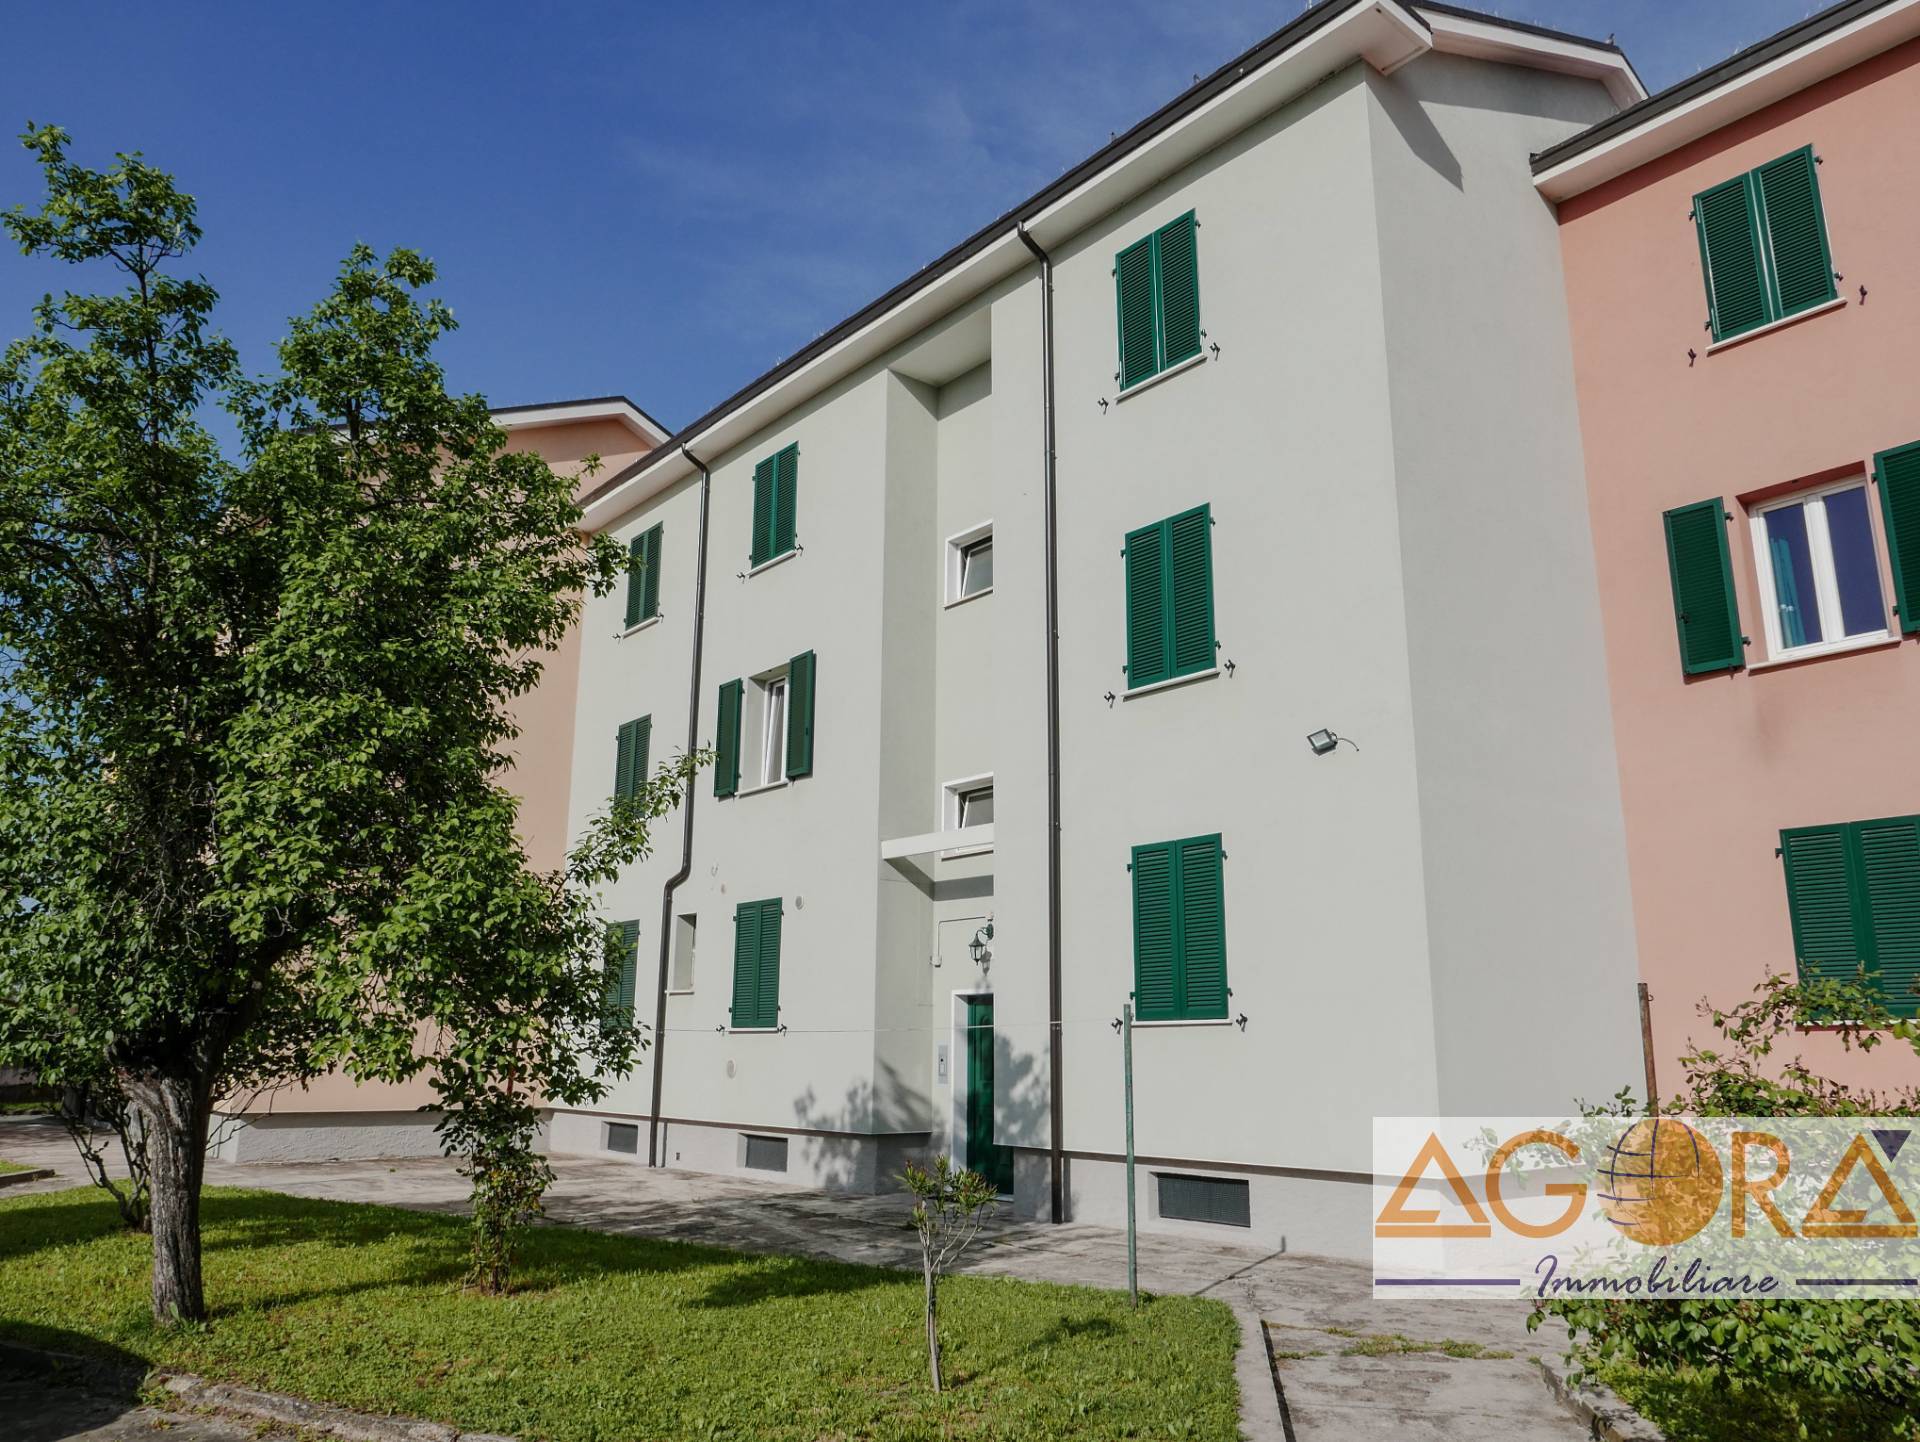 Appartamento in vendita a Tortona, 2 locali, prezzo € 38.000 | PortaleAgenzieImmobiliari.it